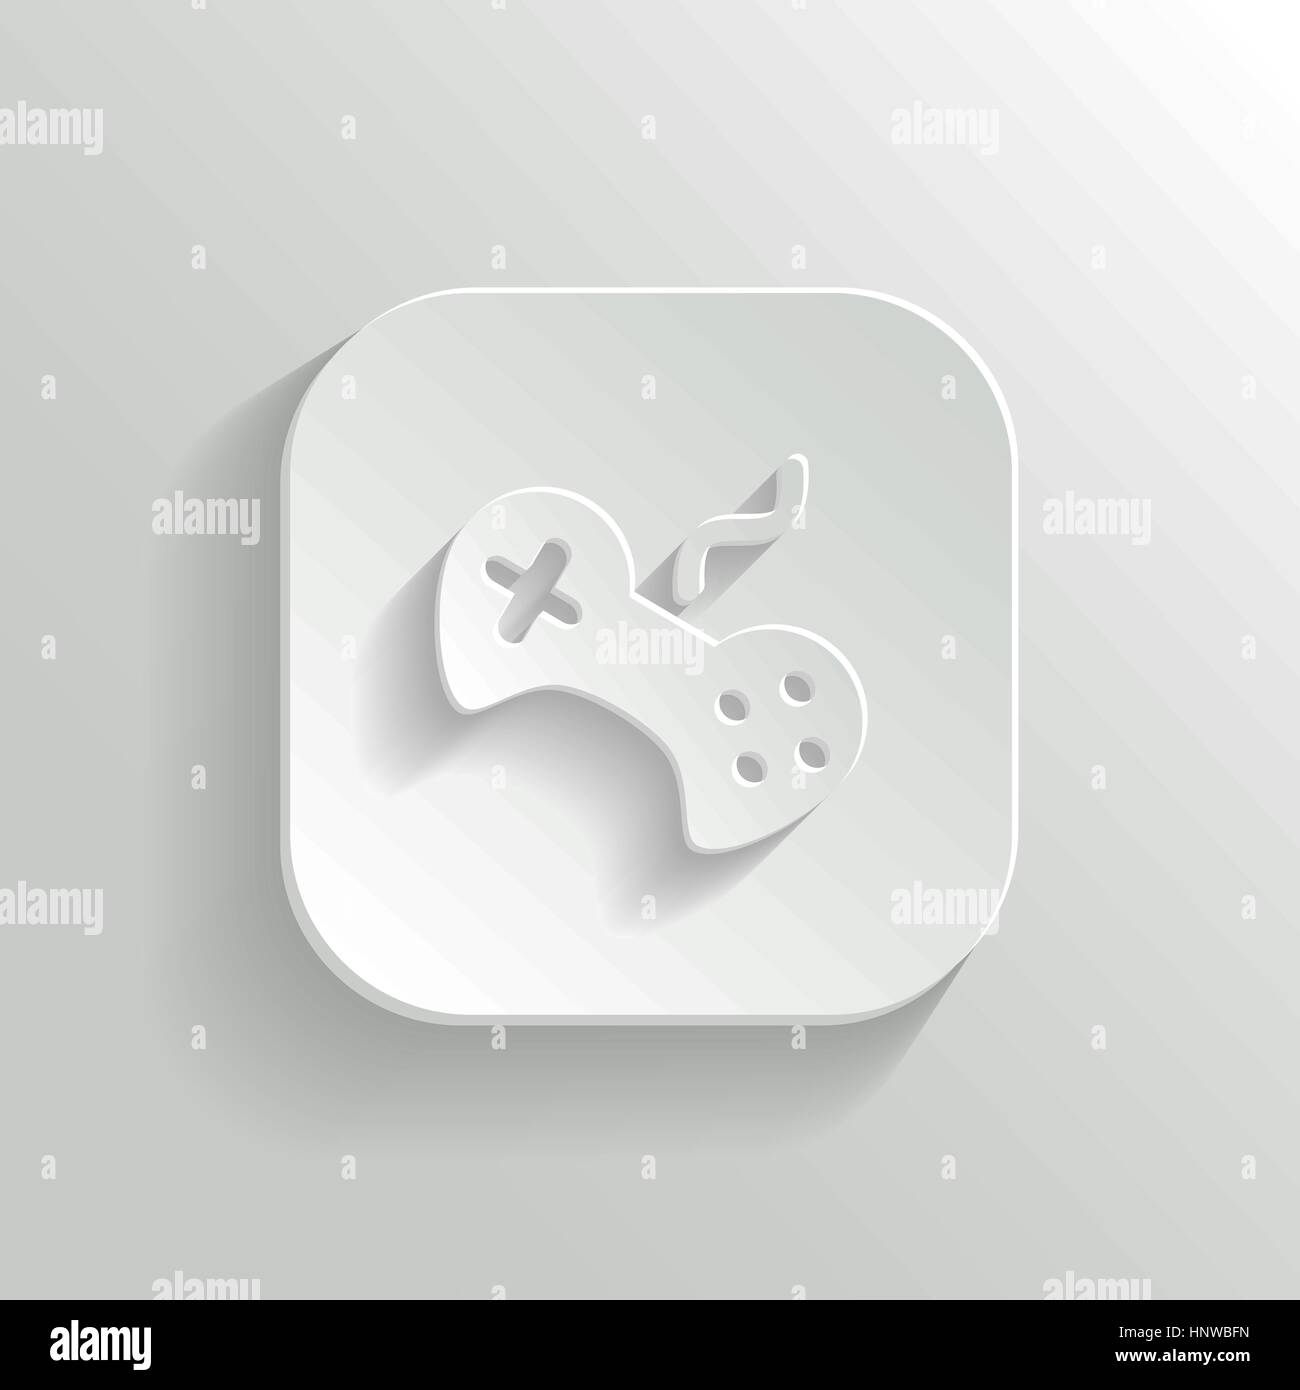 Videospiel-Ikone - Vektor-weiße app-Schaltfläche mit Schatten Stock Vektor